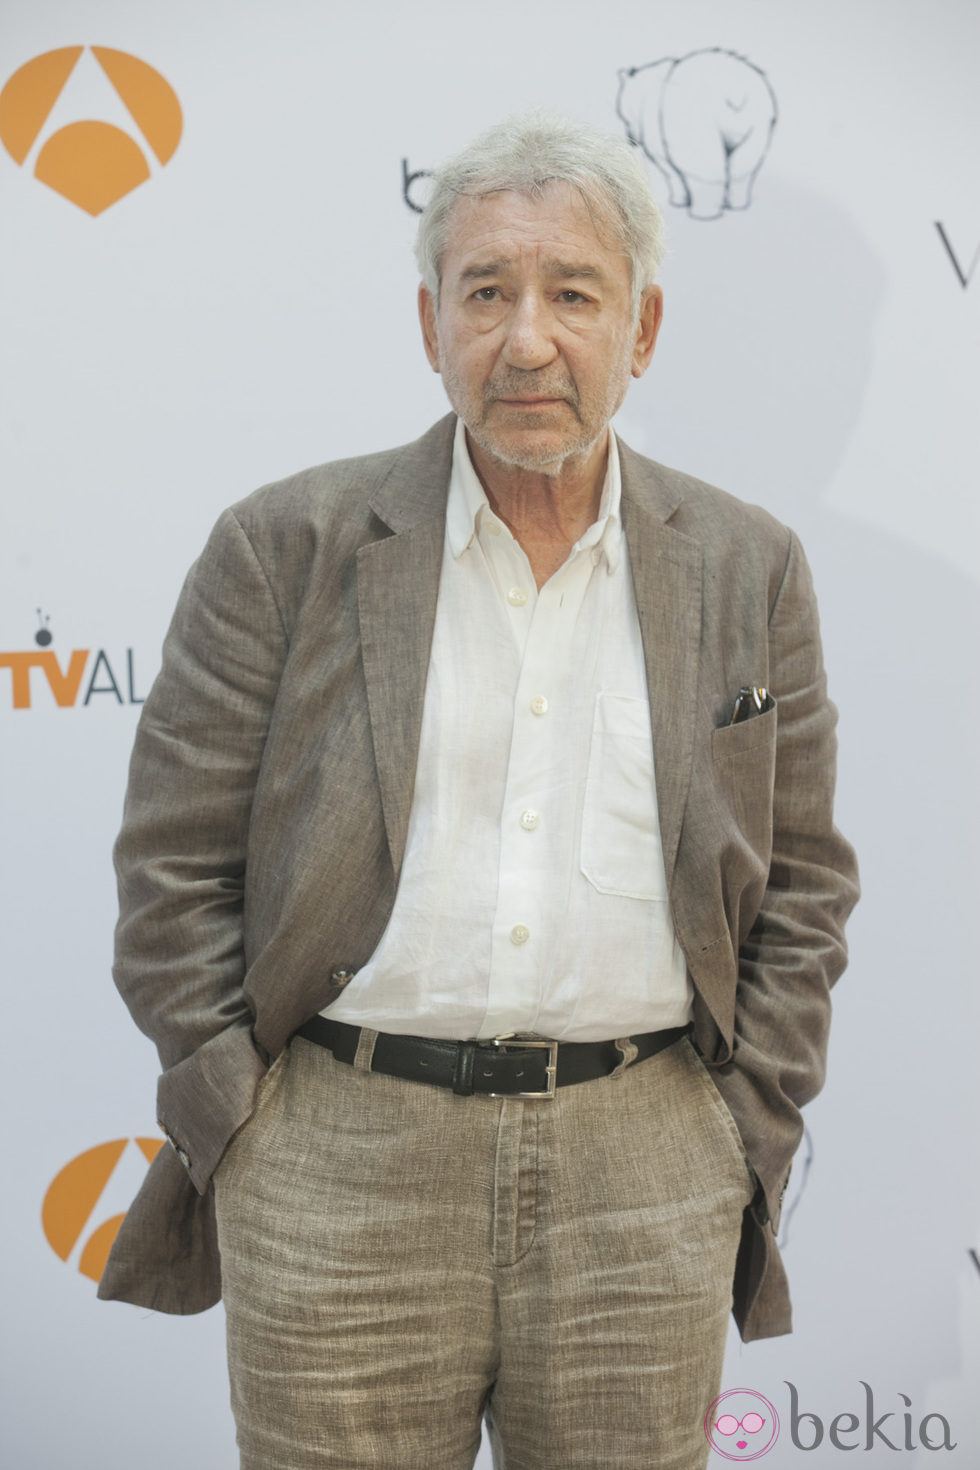 José Sacristán en la presentación de 'Galerías Velvet' en el FesTVal de Vitoria 2013